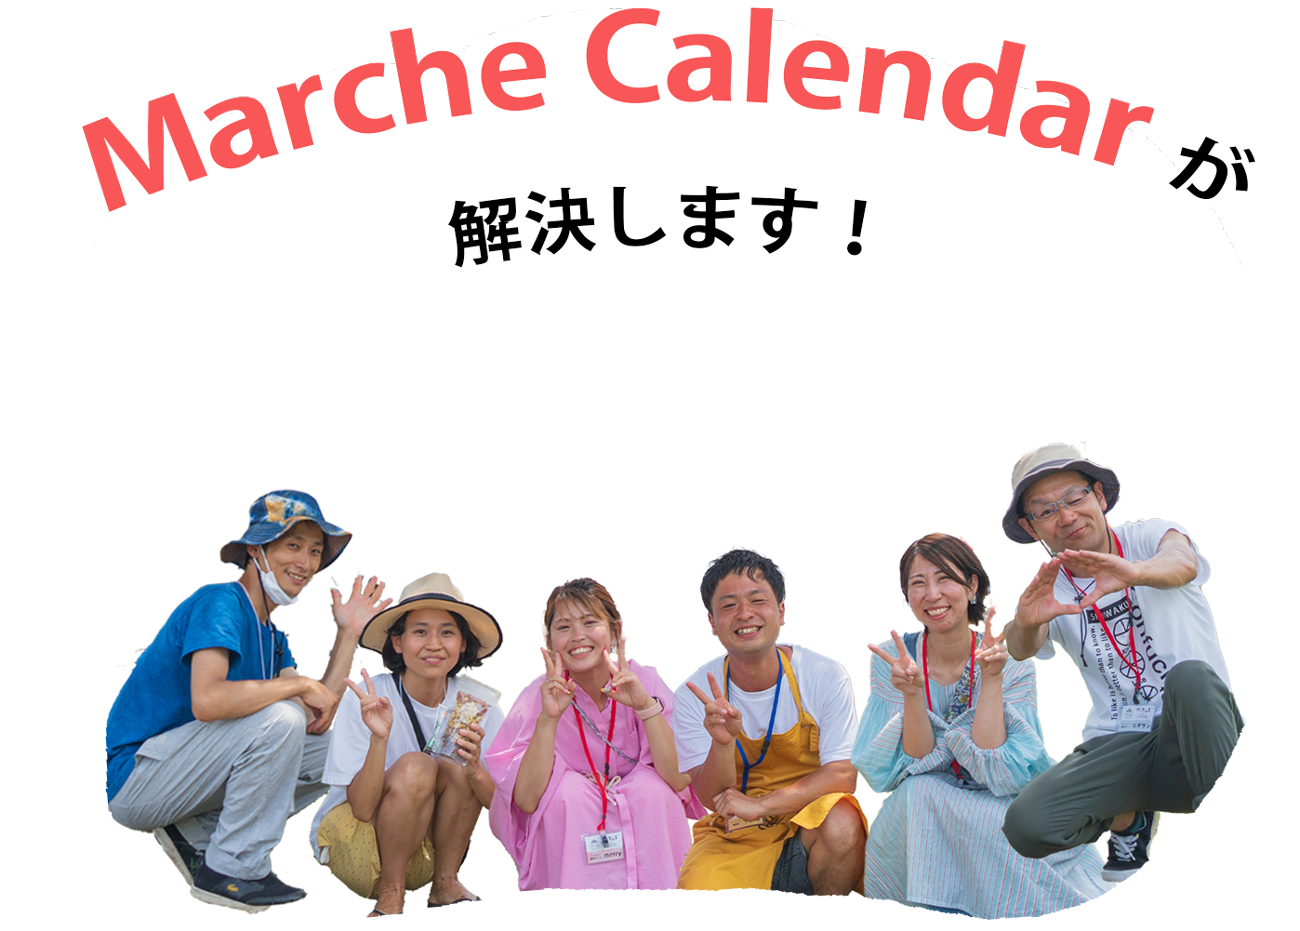 マルシェカレンダーが解決しますの文字とマルシェカレンダーチームの６人がこちらを見て微笑んでいる様子の写真